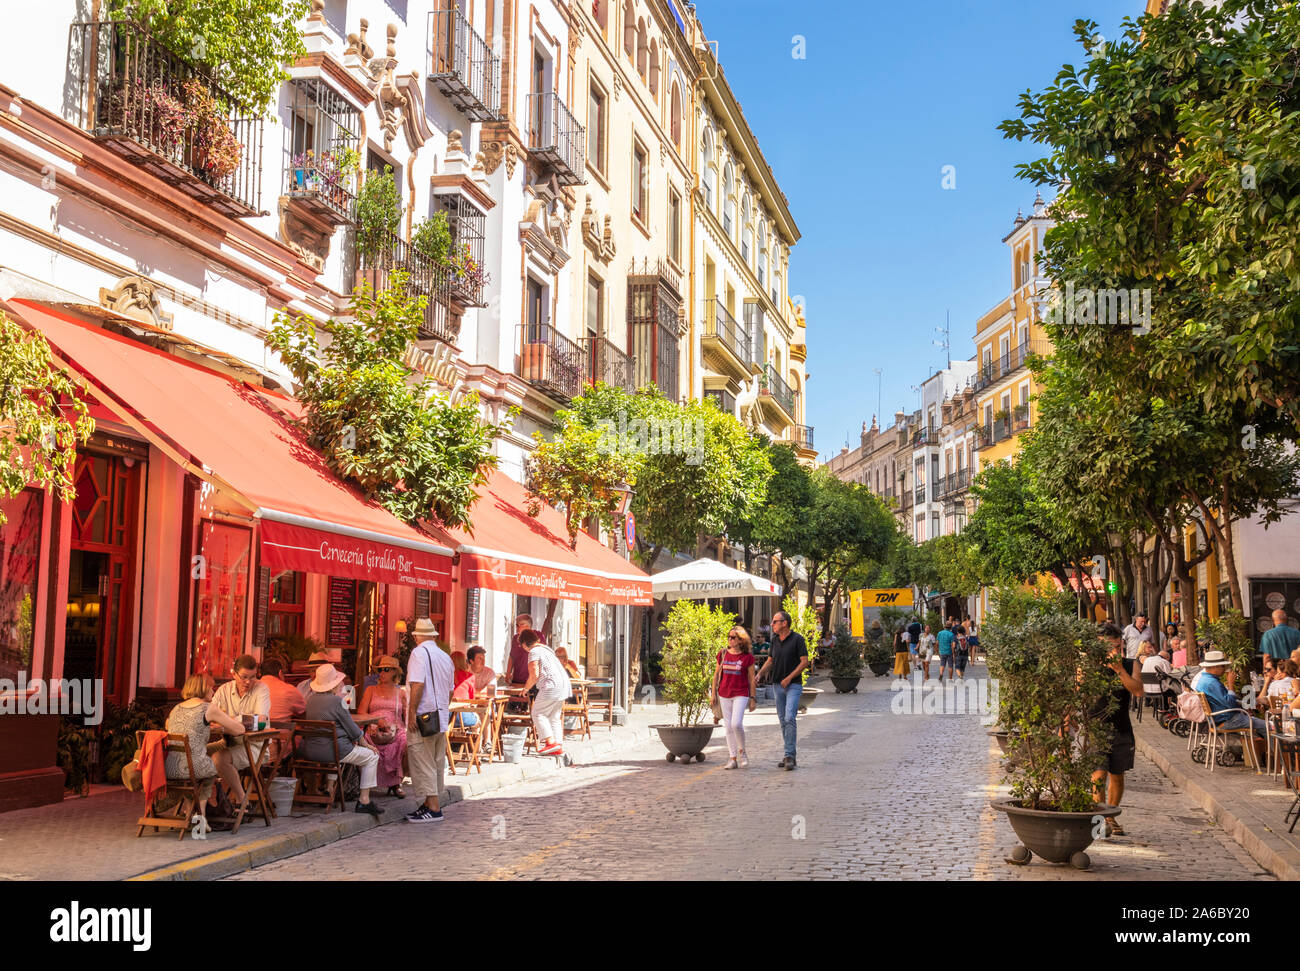 Seville Calle Mateos Gago Street, les gens de manger à l'extérieur des cafés et restaurants du centre de Séville Séville Séville Séville Espagne Andalousie Espagne eu Europe Banque D'Images